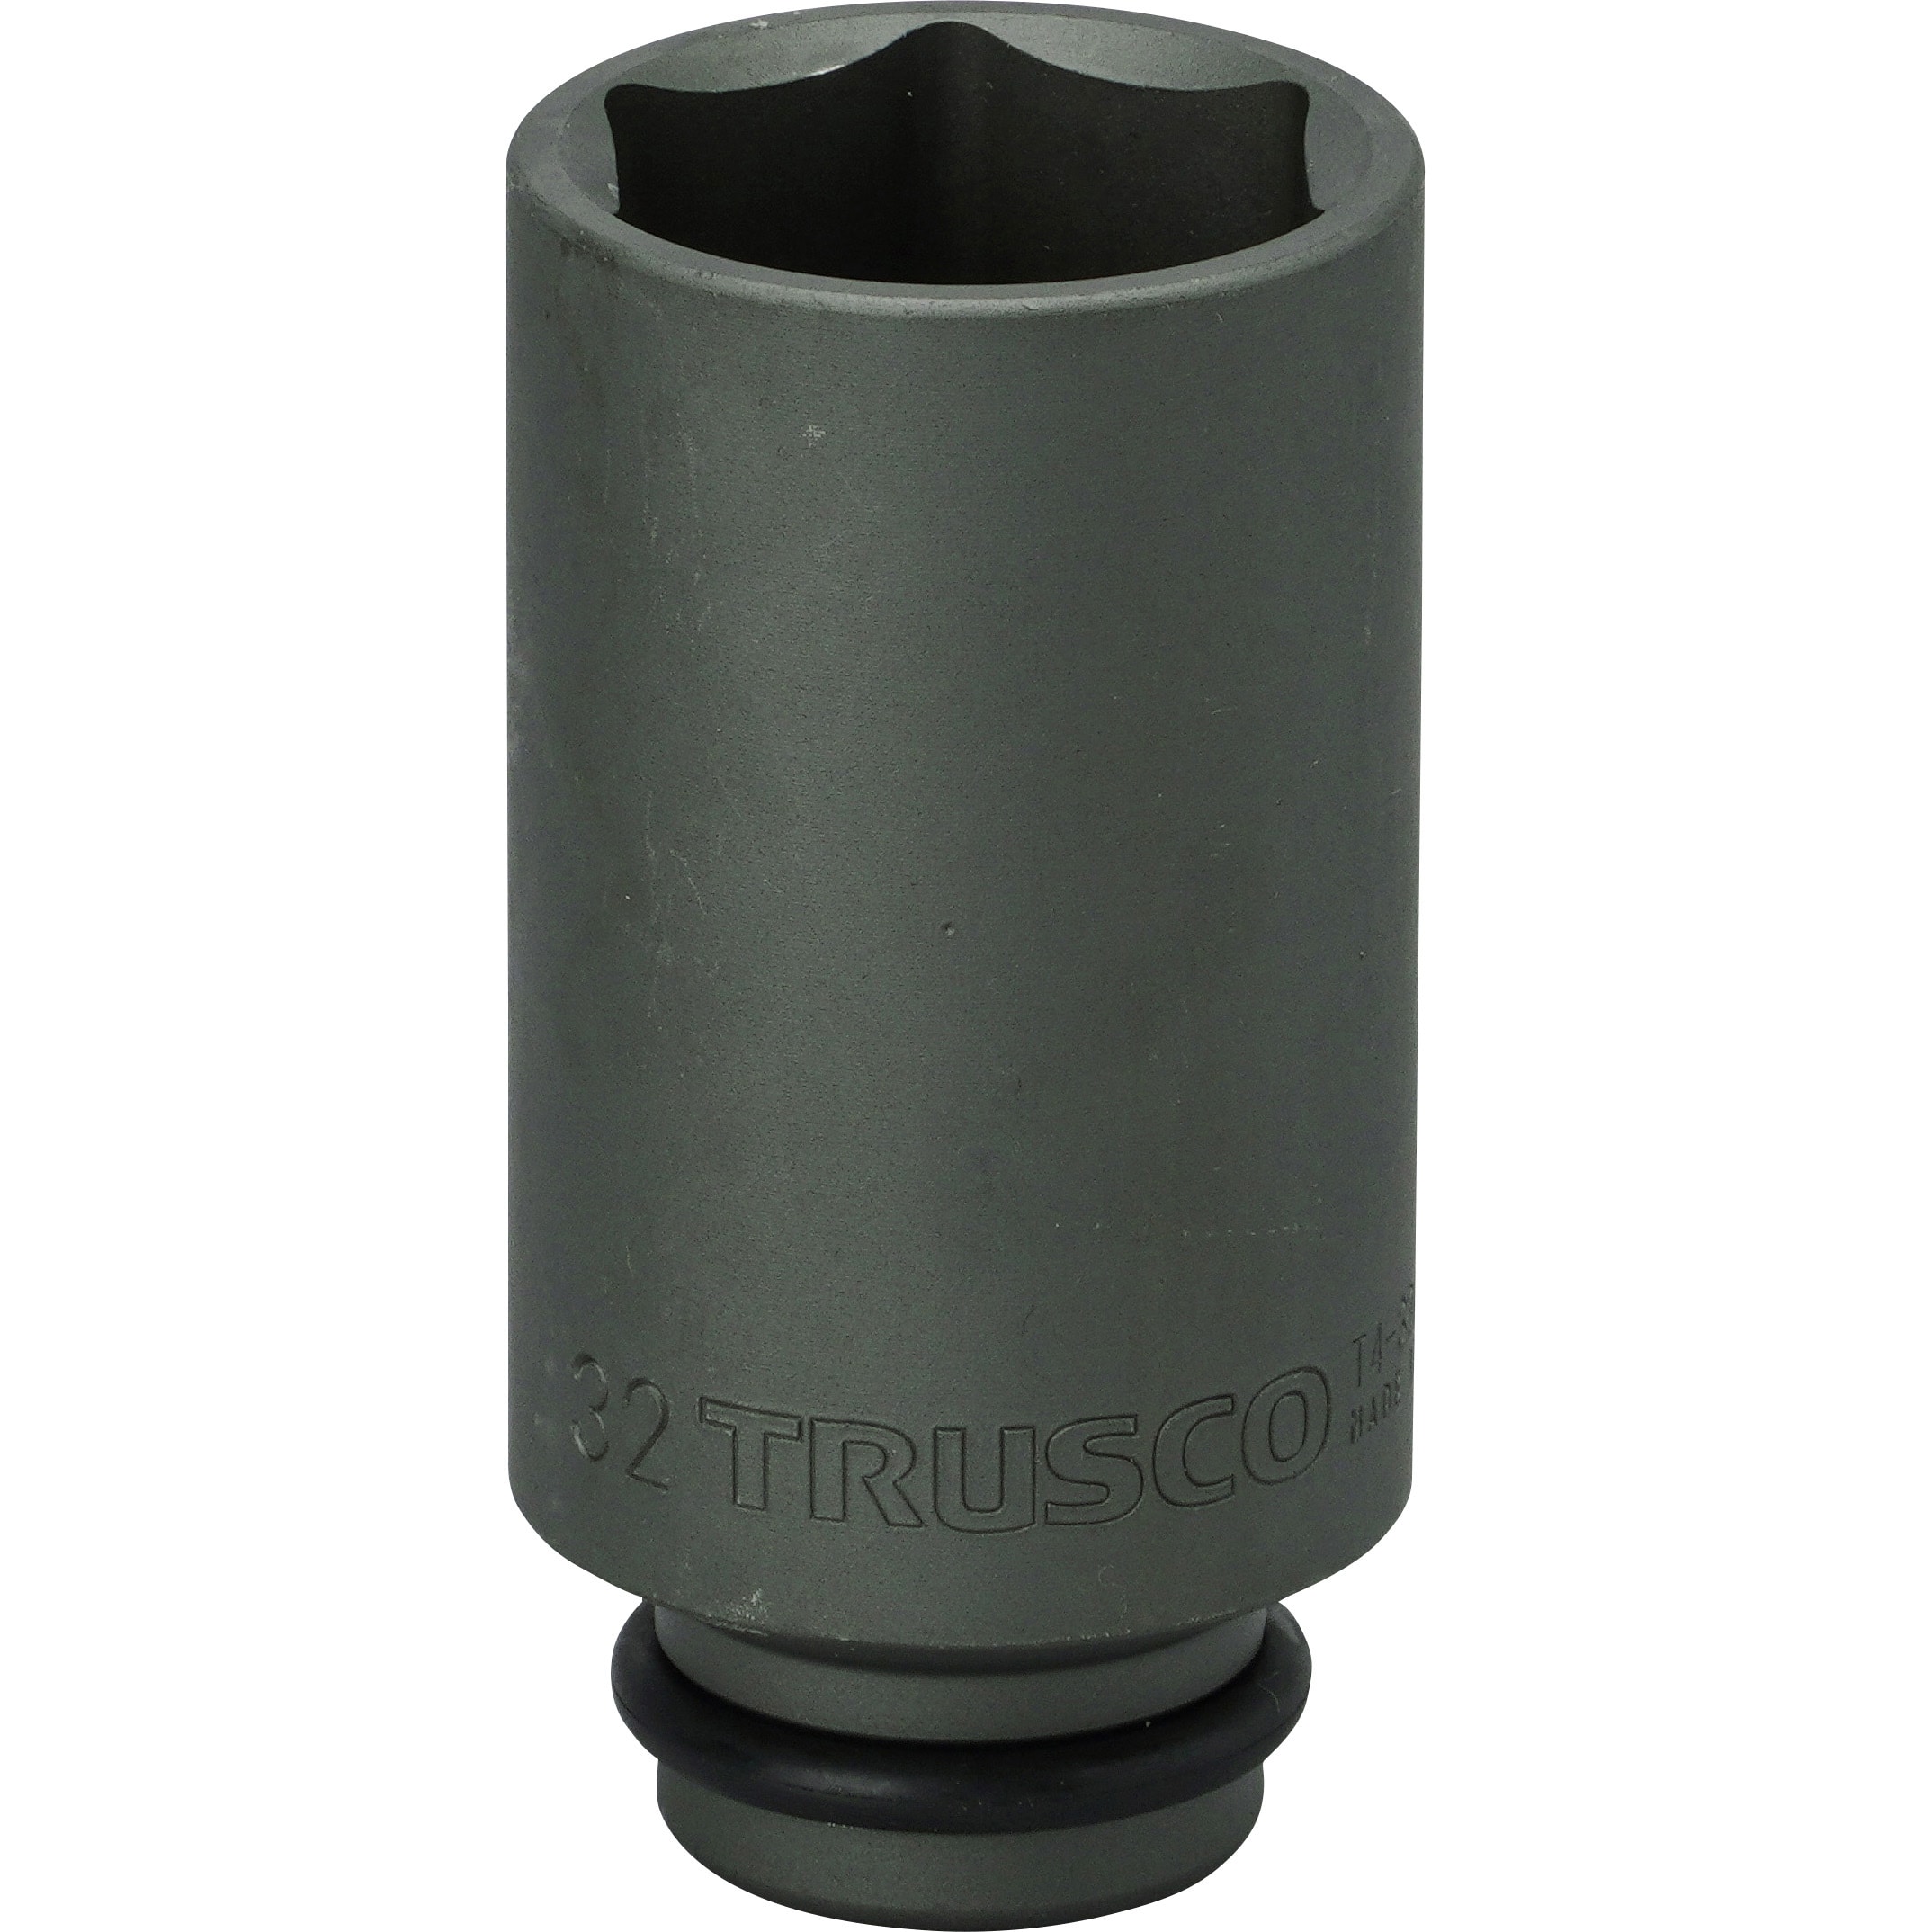 TRUSCO(トラスコ) インパクト用ソケット13個組セット 差込角12.7mm T413SET - 1